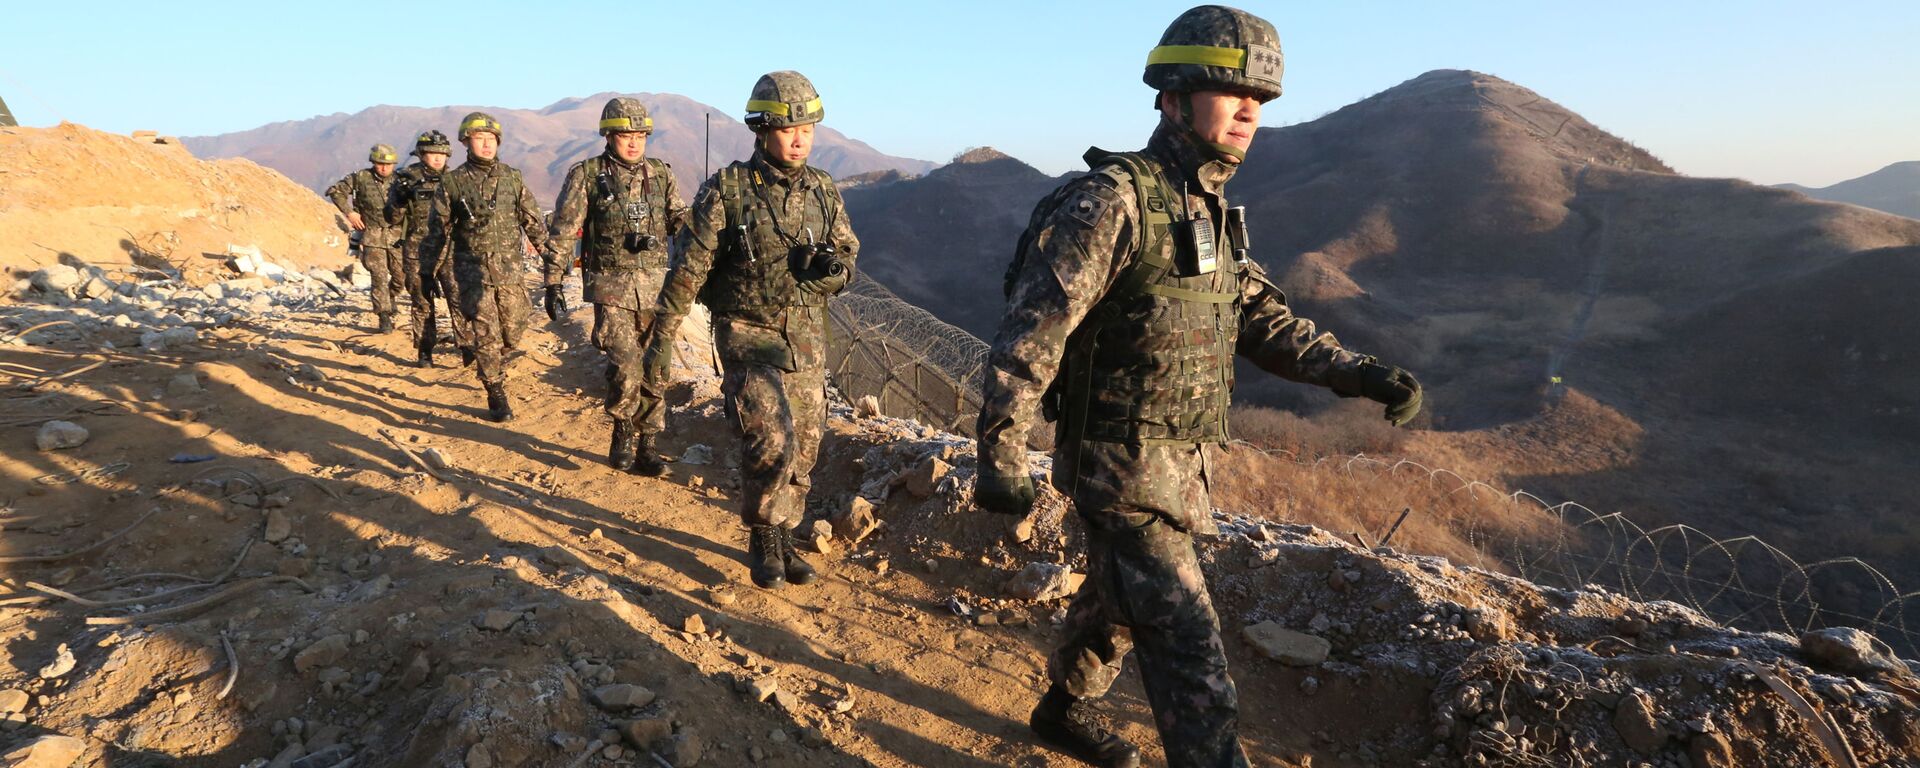 الحدود بين كوريا الجنوبية و كوريا الشمالية - الجنود - الجيش الكوري الجنوبي والشمالي، 12 ديسمبر/ كانون الأول 2018 - سبوتنيك عربي, 1920, 31.03.2022